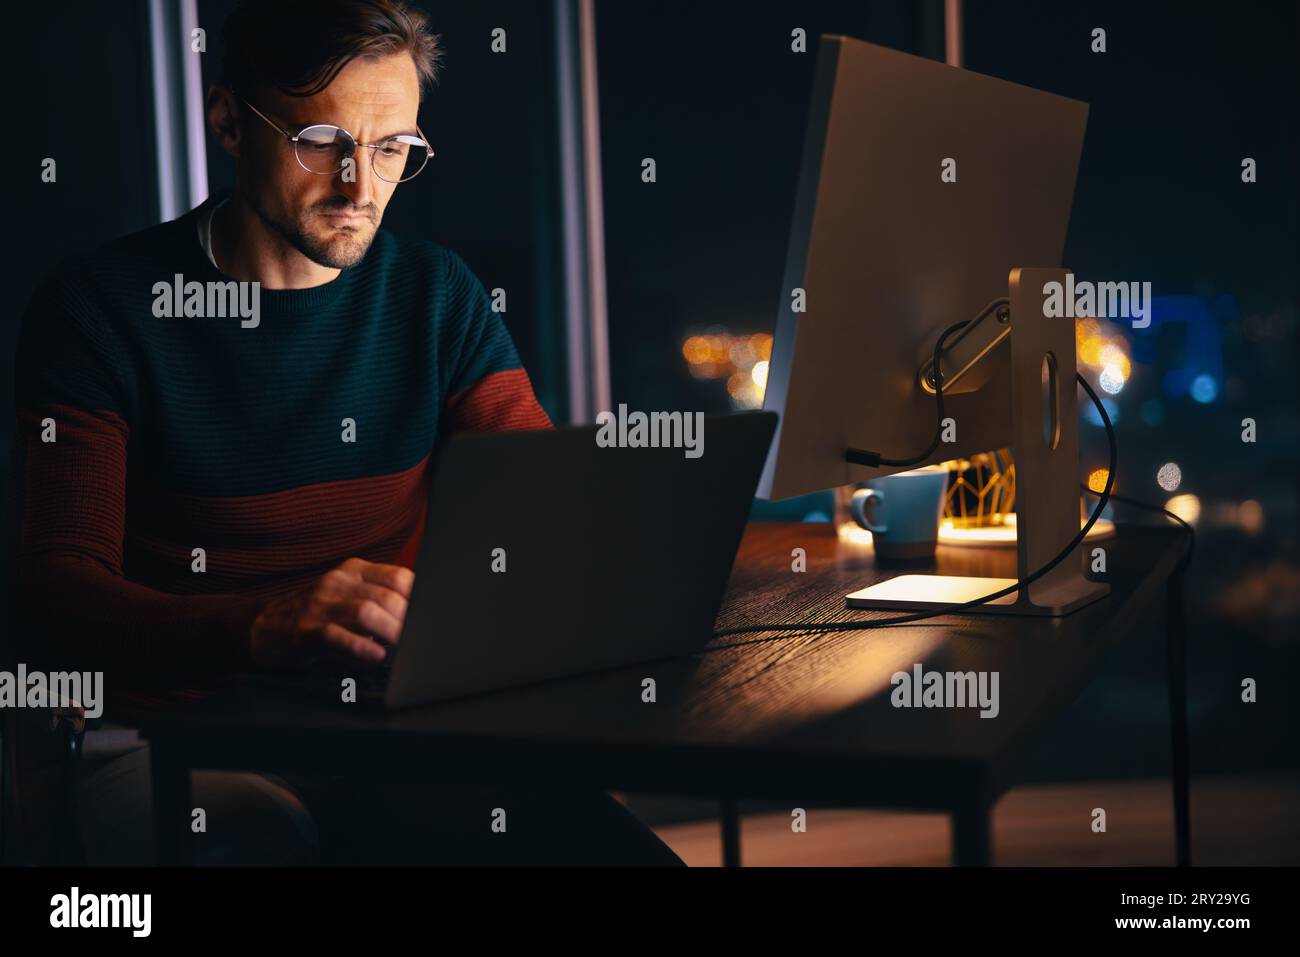 Web designer che lavora fino a tardi in un ufficio, utilizzando il suo laptop per completare un progetto. uomo d'affari seduto alla sua scrivania, che utilizza la tranquilla atmosfera notturna Foto Stock